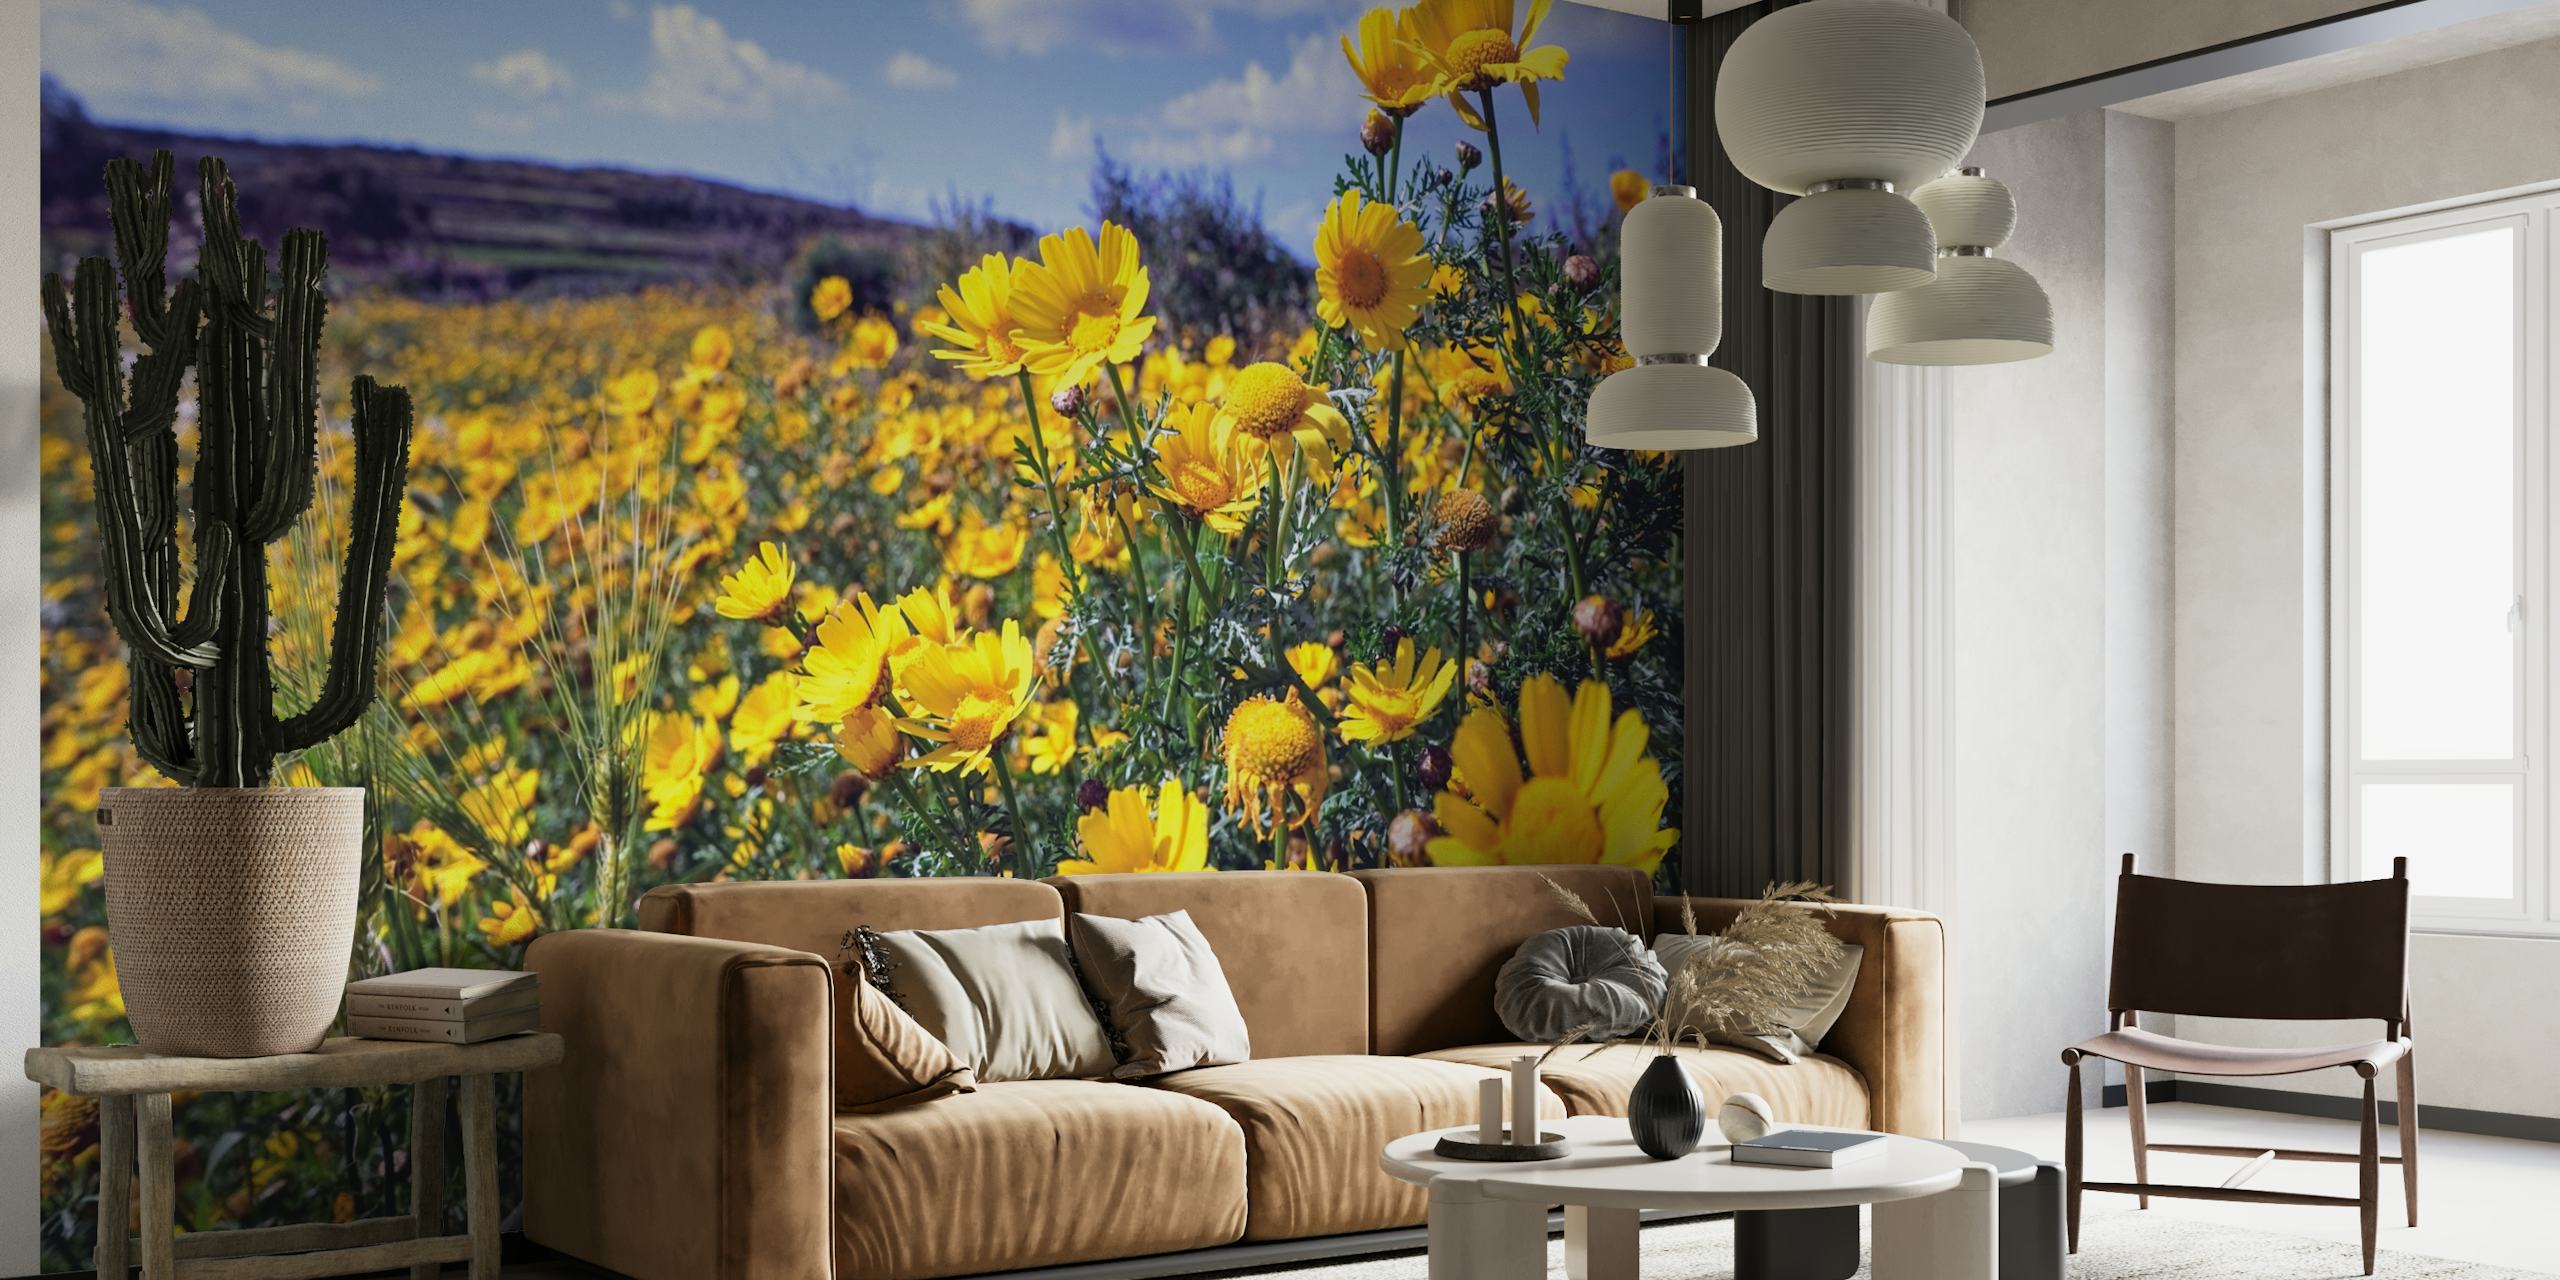 Suncem obasjana mural Polja cvijeća tratinčica sa živopisnim žutim tratinčicama na jarko plavom nebu